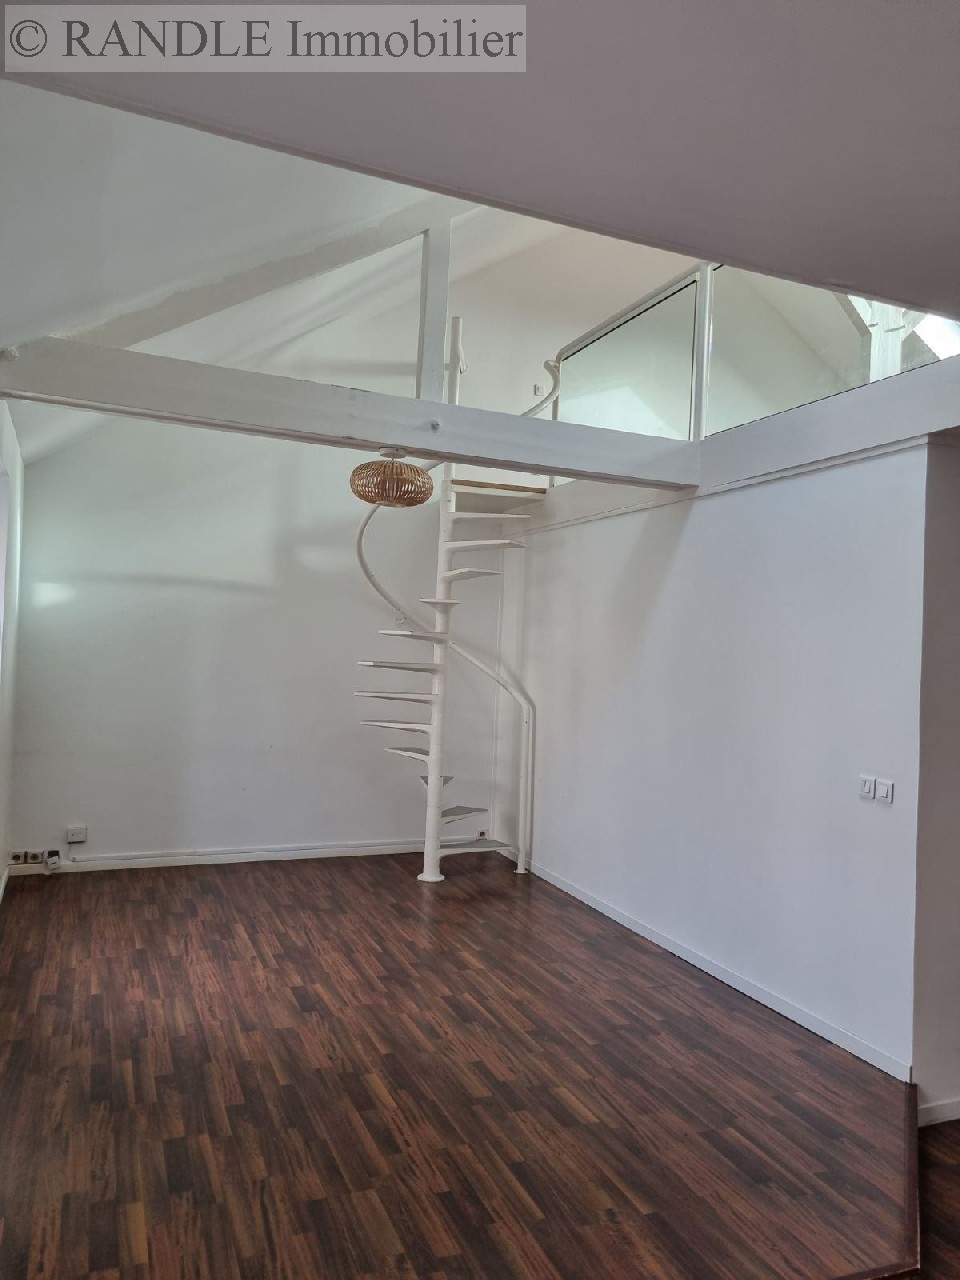 Vente appartement - LORIENT 80 m², 3 pièces